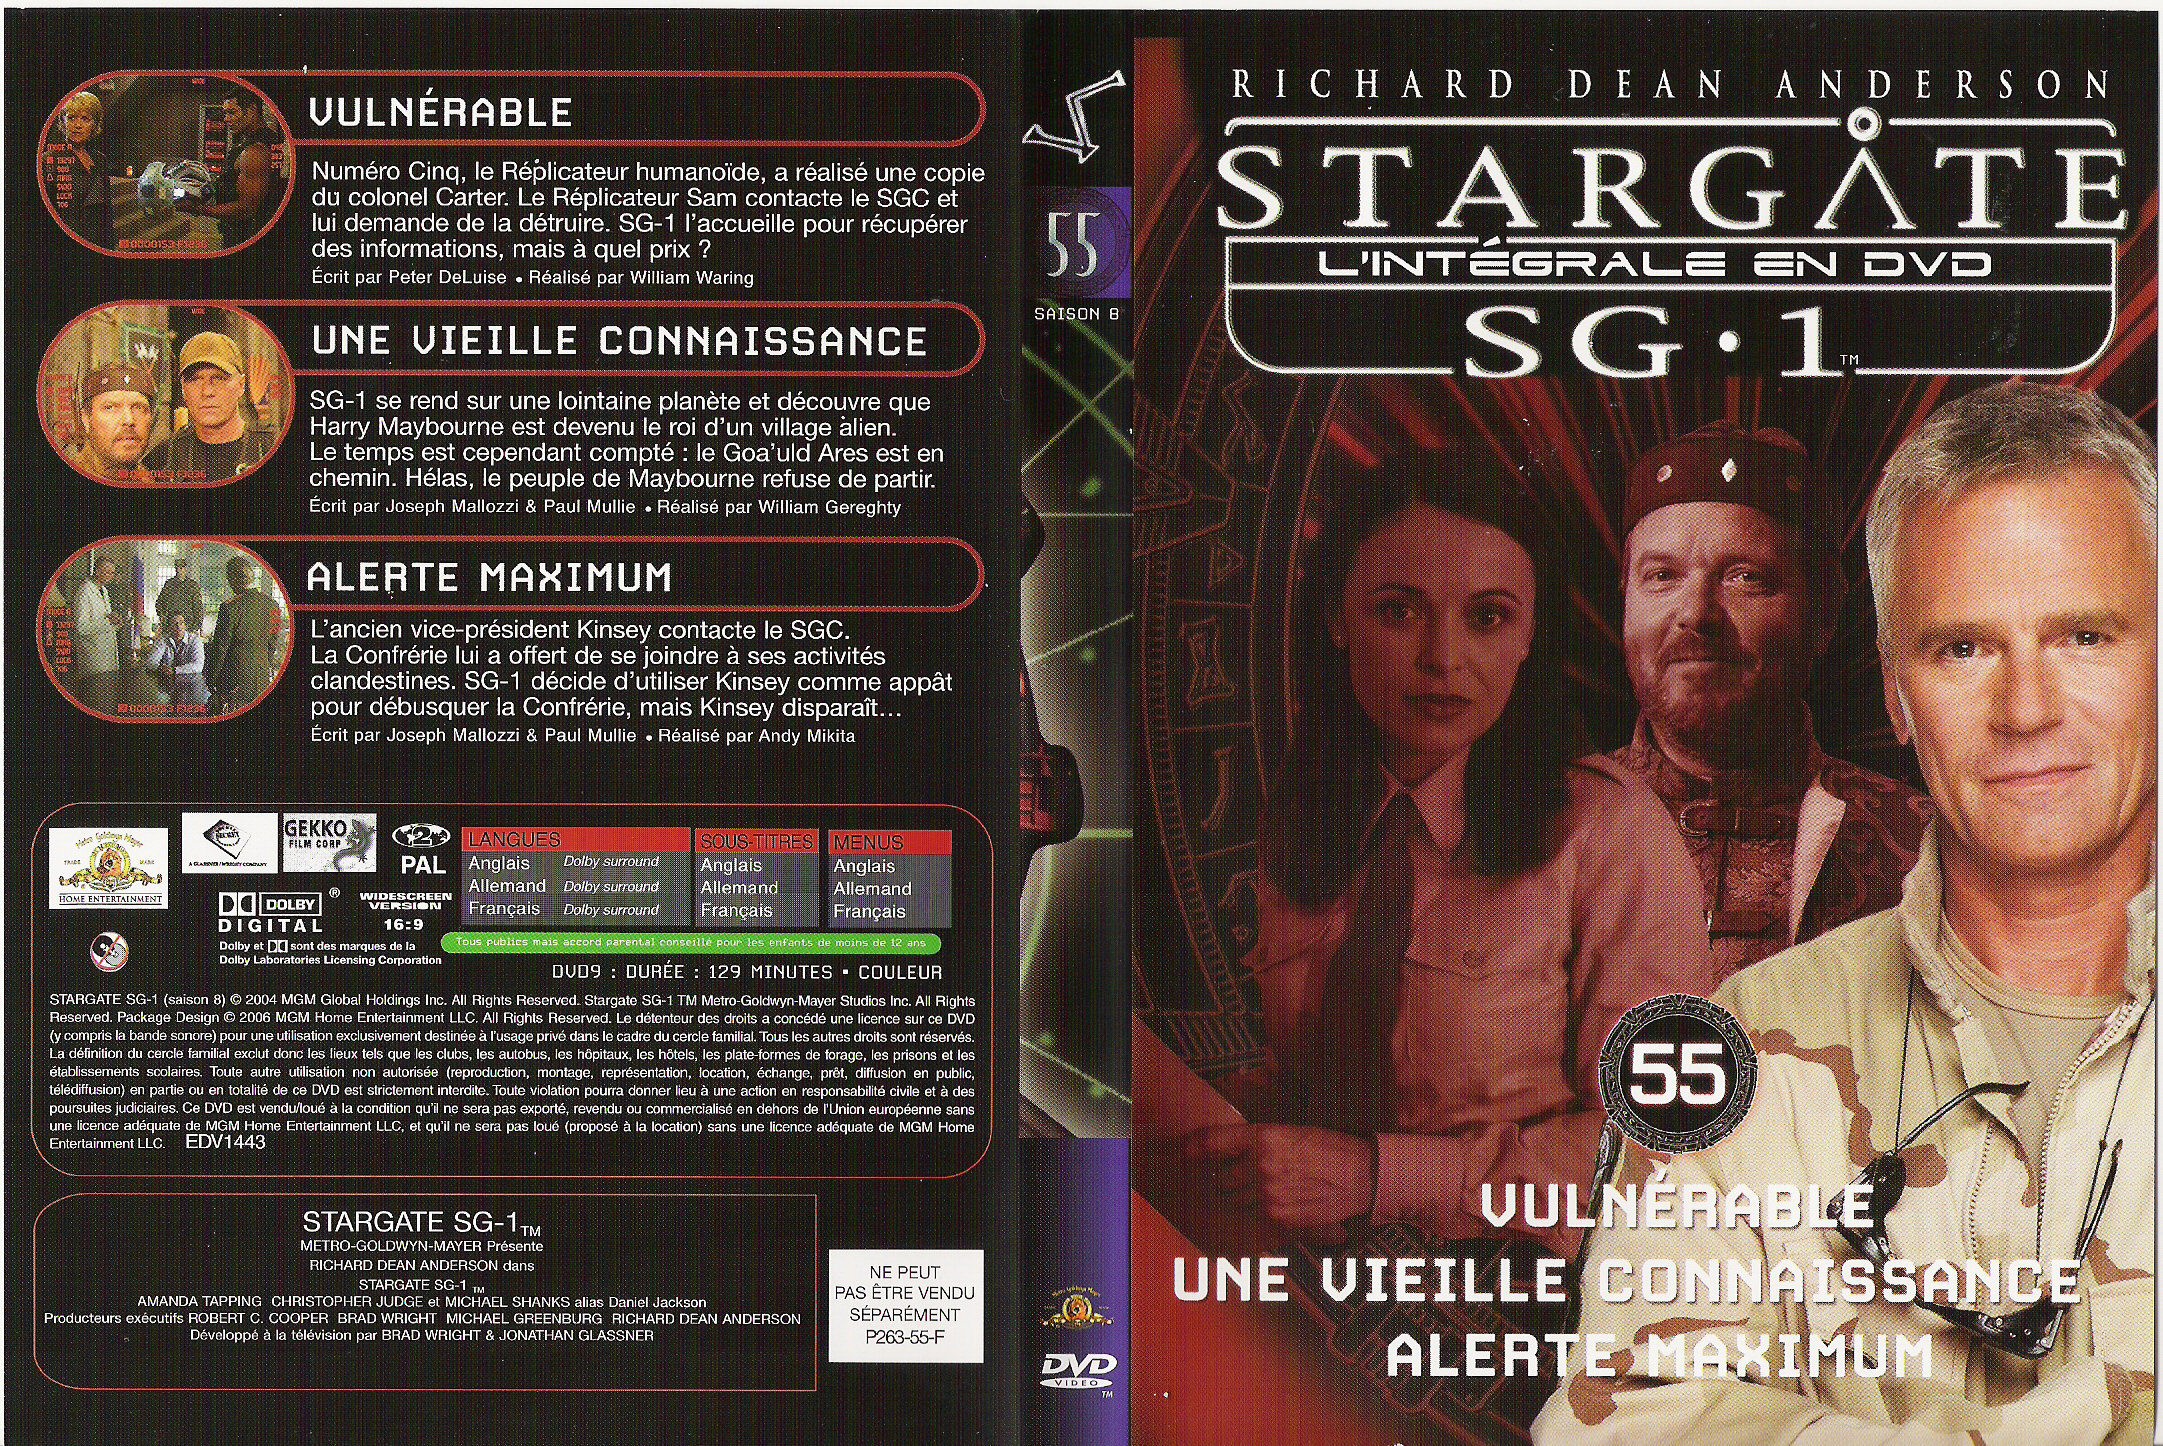 Jaquette DVD Stargate saison 8 vol 55